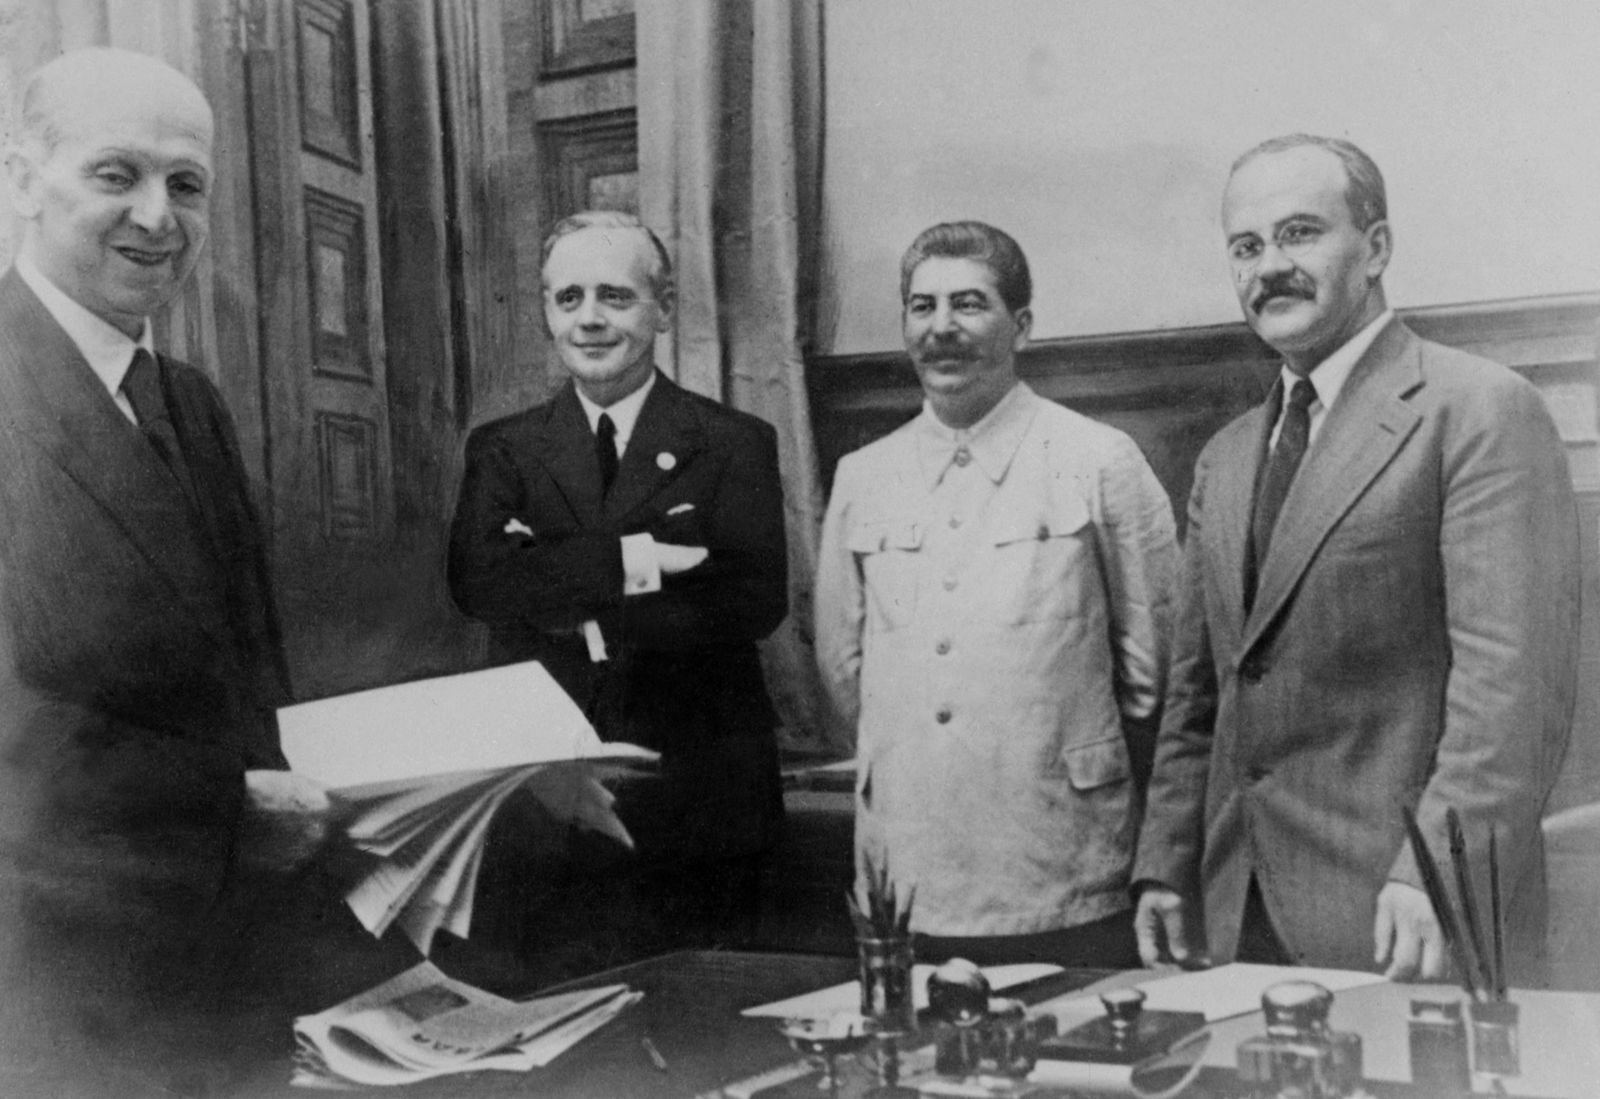 الزعيم السوفياتي جوزيف ستالين متوسطاً وزير الخارجية الألماني يواخيم فون ريبنتروب (إلى يمينه) ووزير الخارجية السوفياتي فياتشيسلاف مولوتوف بعد توقيع الاتفاق بين الجانبين في الكرملين - 23 أغسطس 1939 - AFP